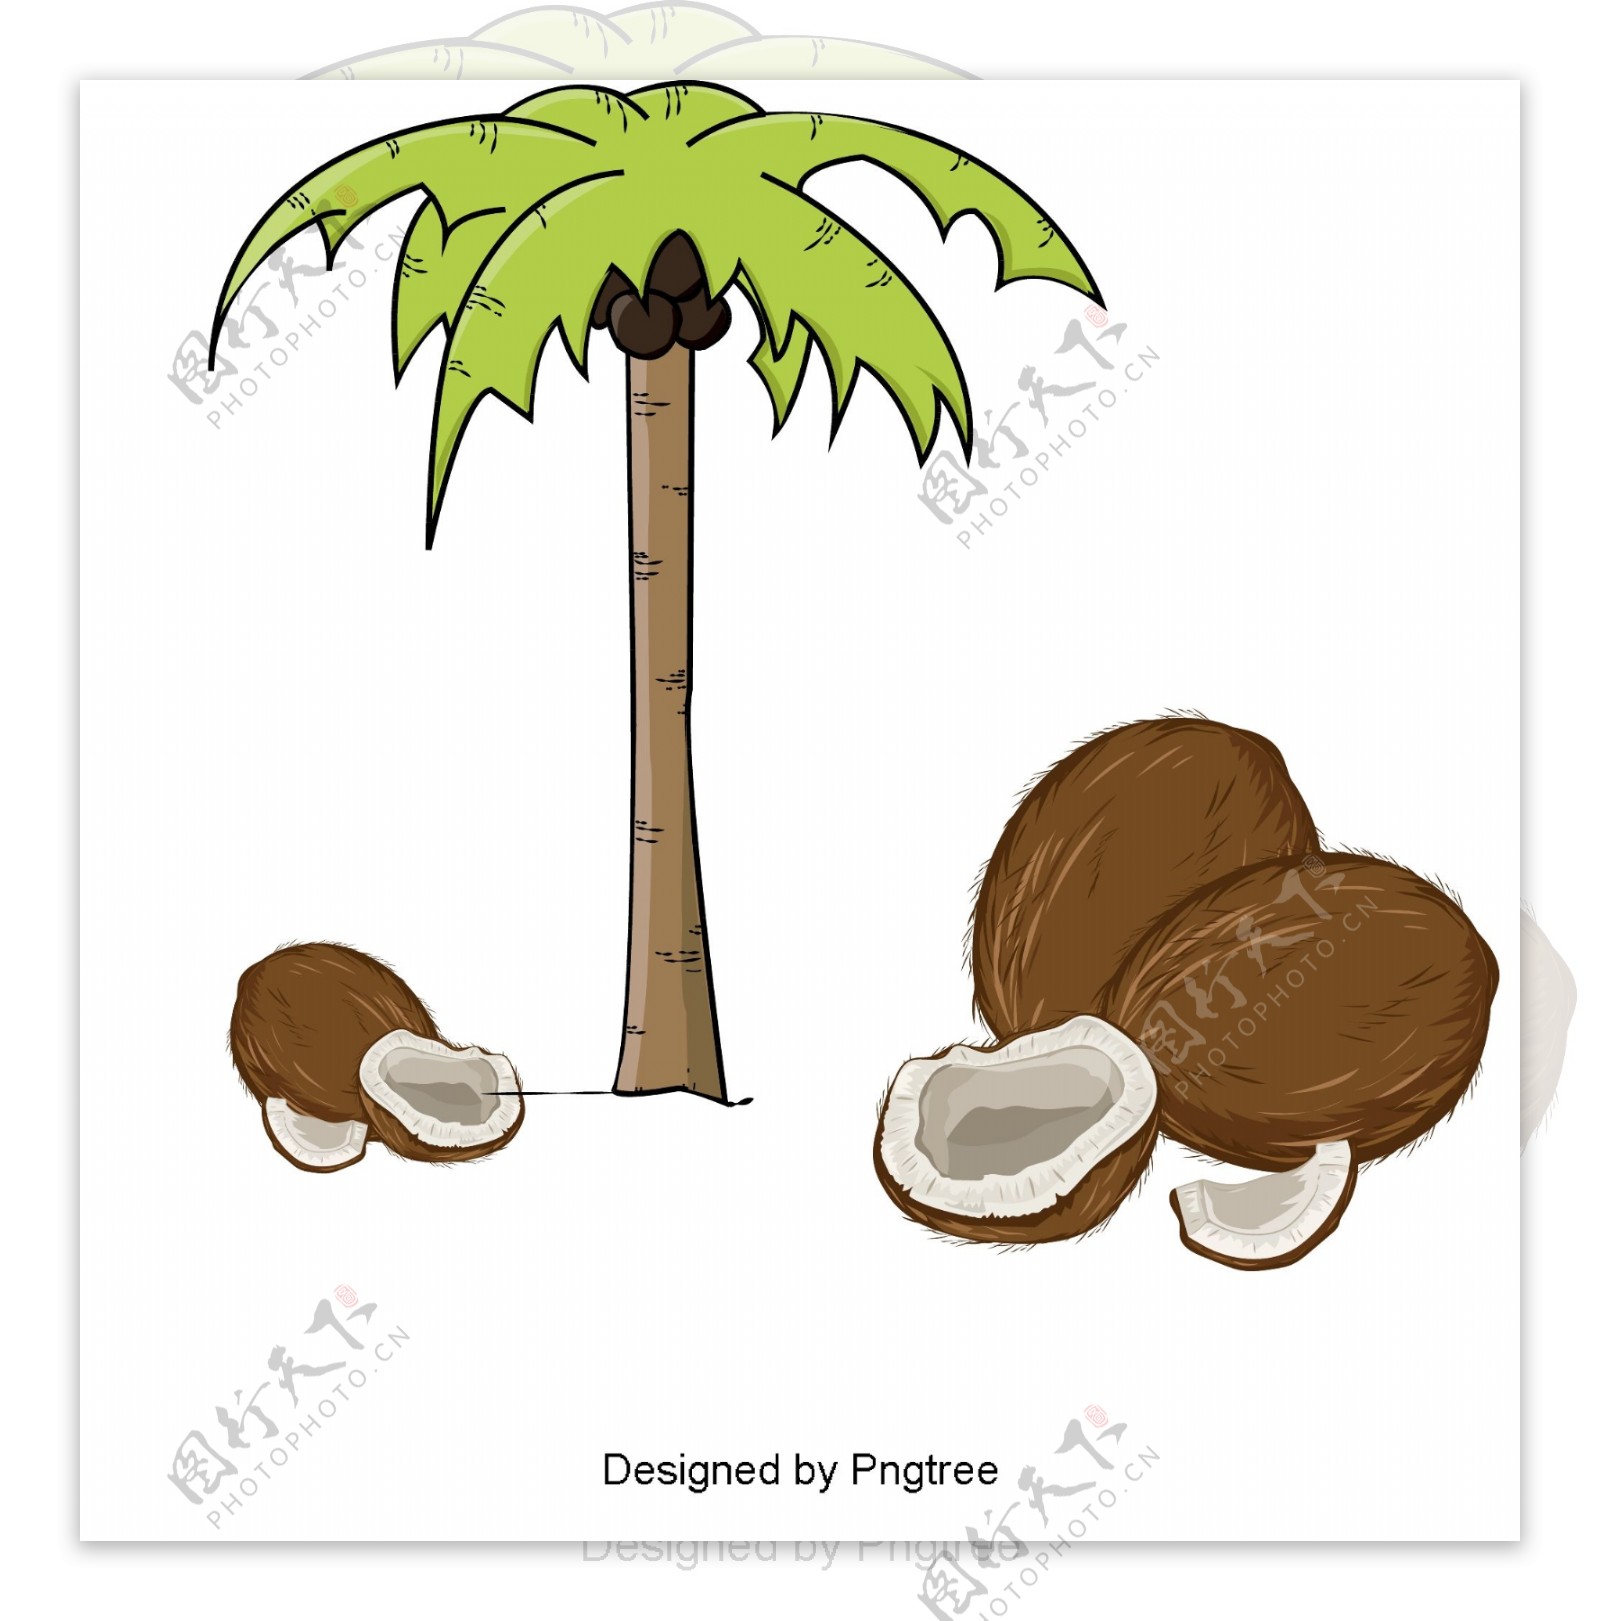 简单卡通椰子装饰图案